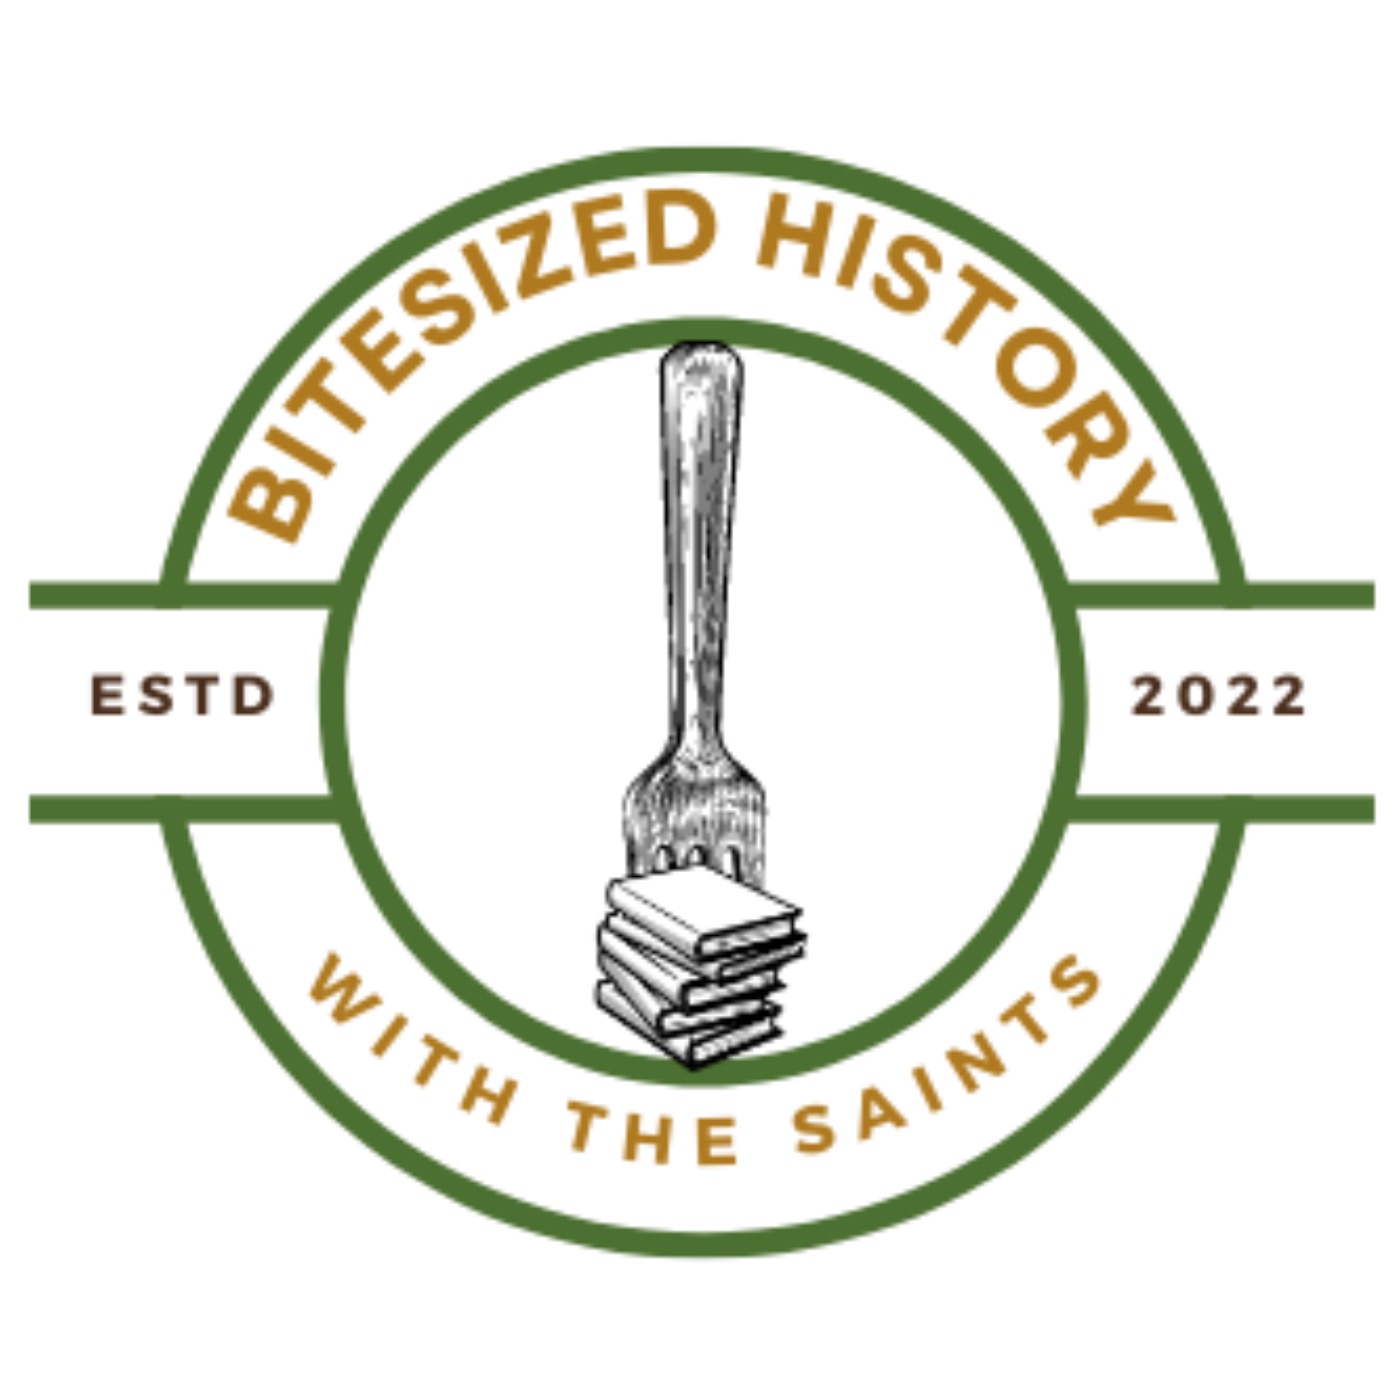 Bitesized History with the Saints